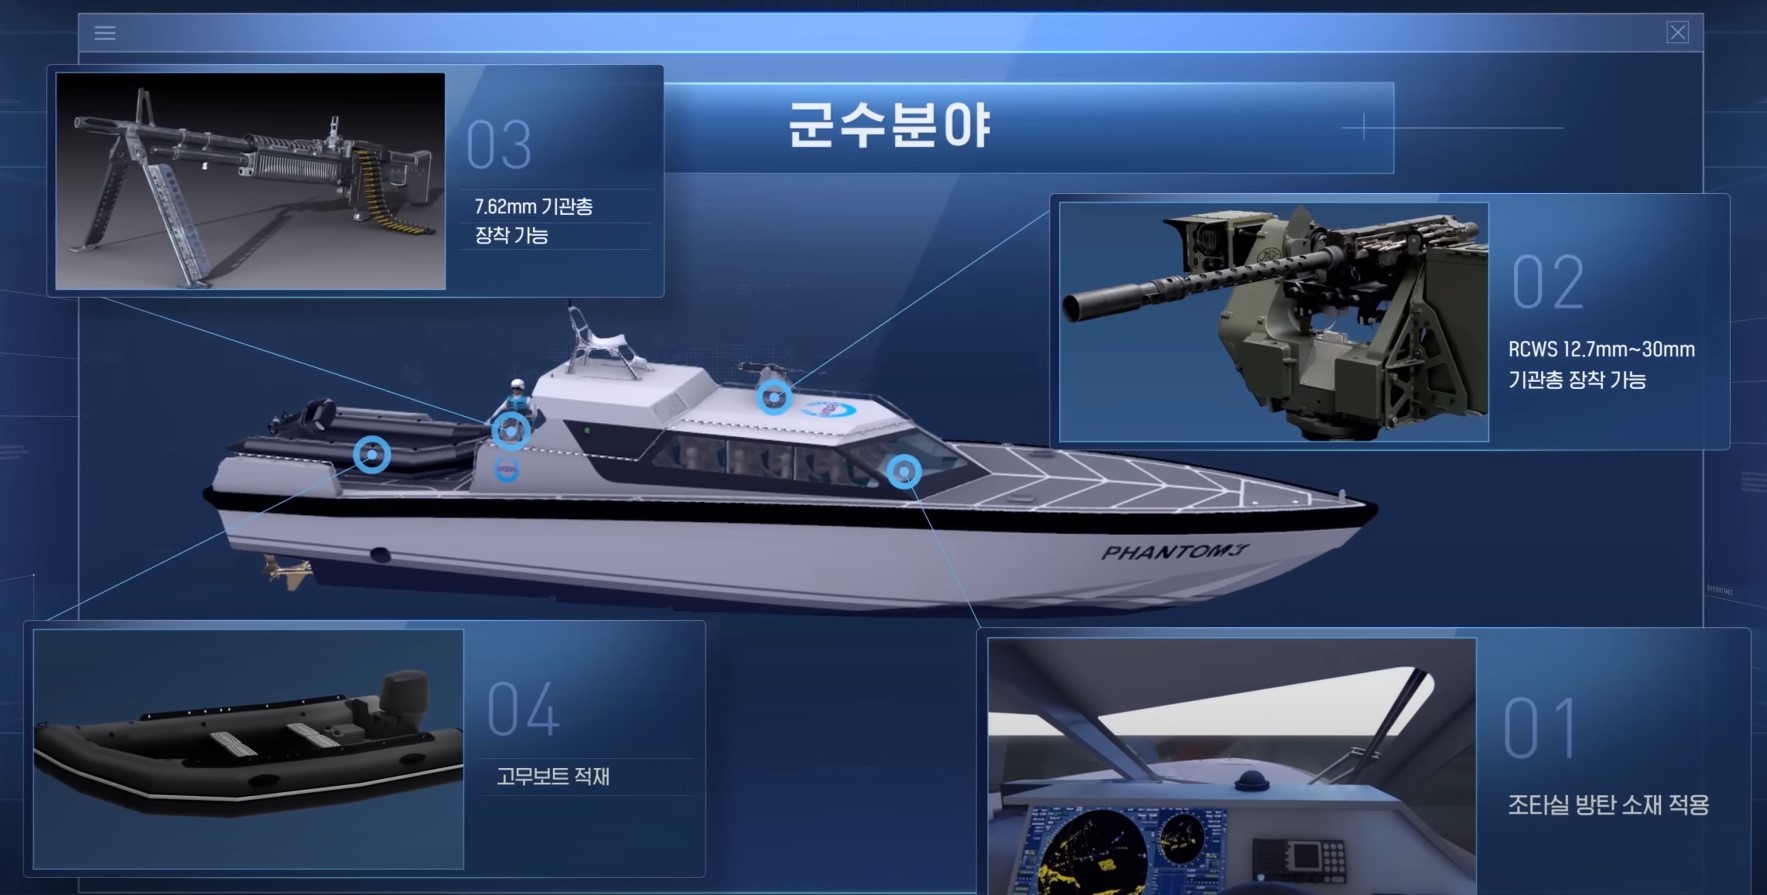 Патрульний катер “Phantom” класу “HSIC” Південної Кореї. Серпень 2022. Ілюстрація від DAPA